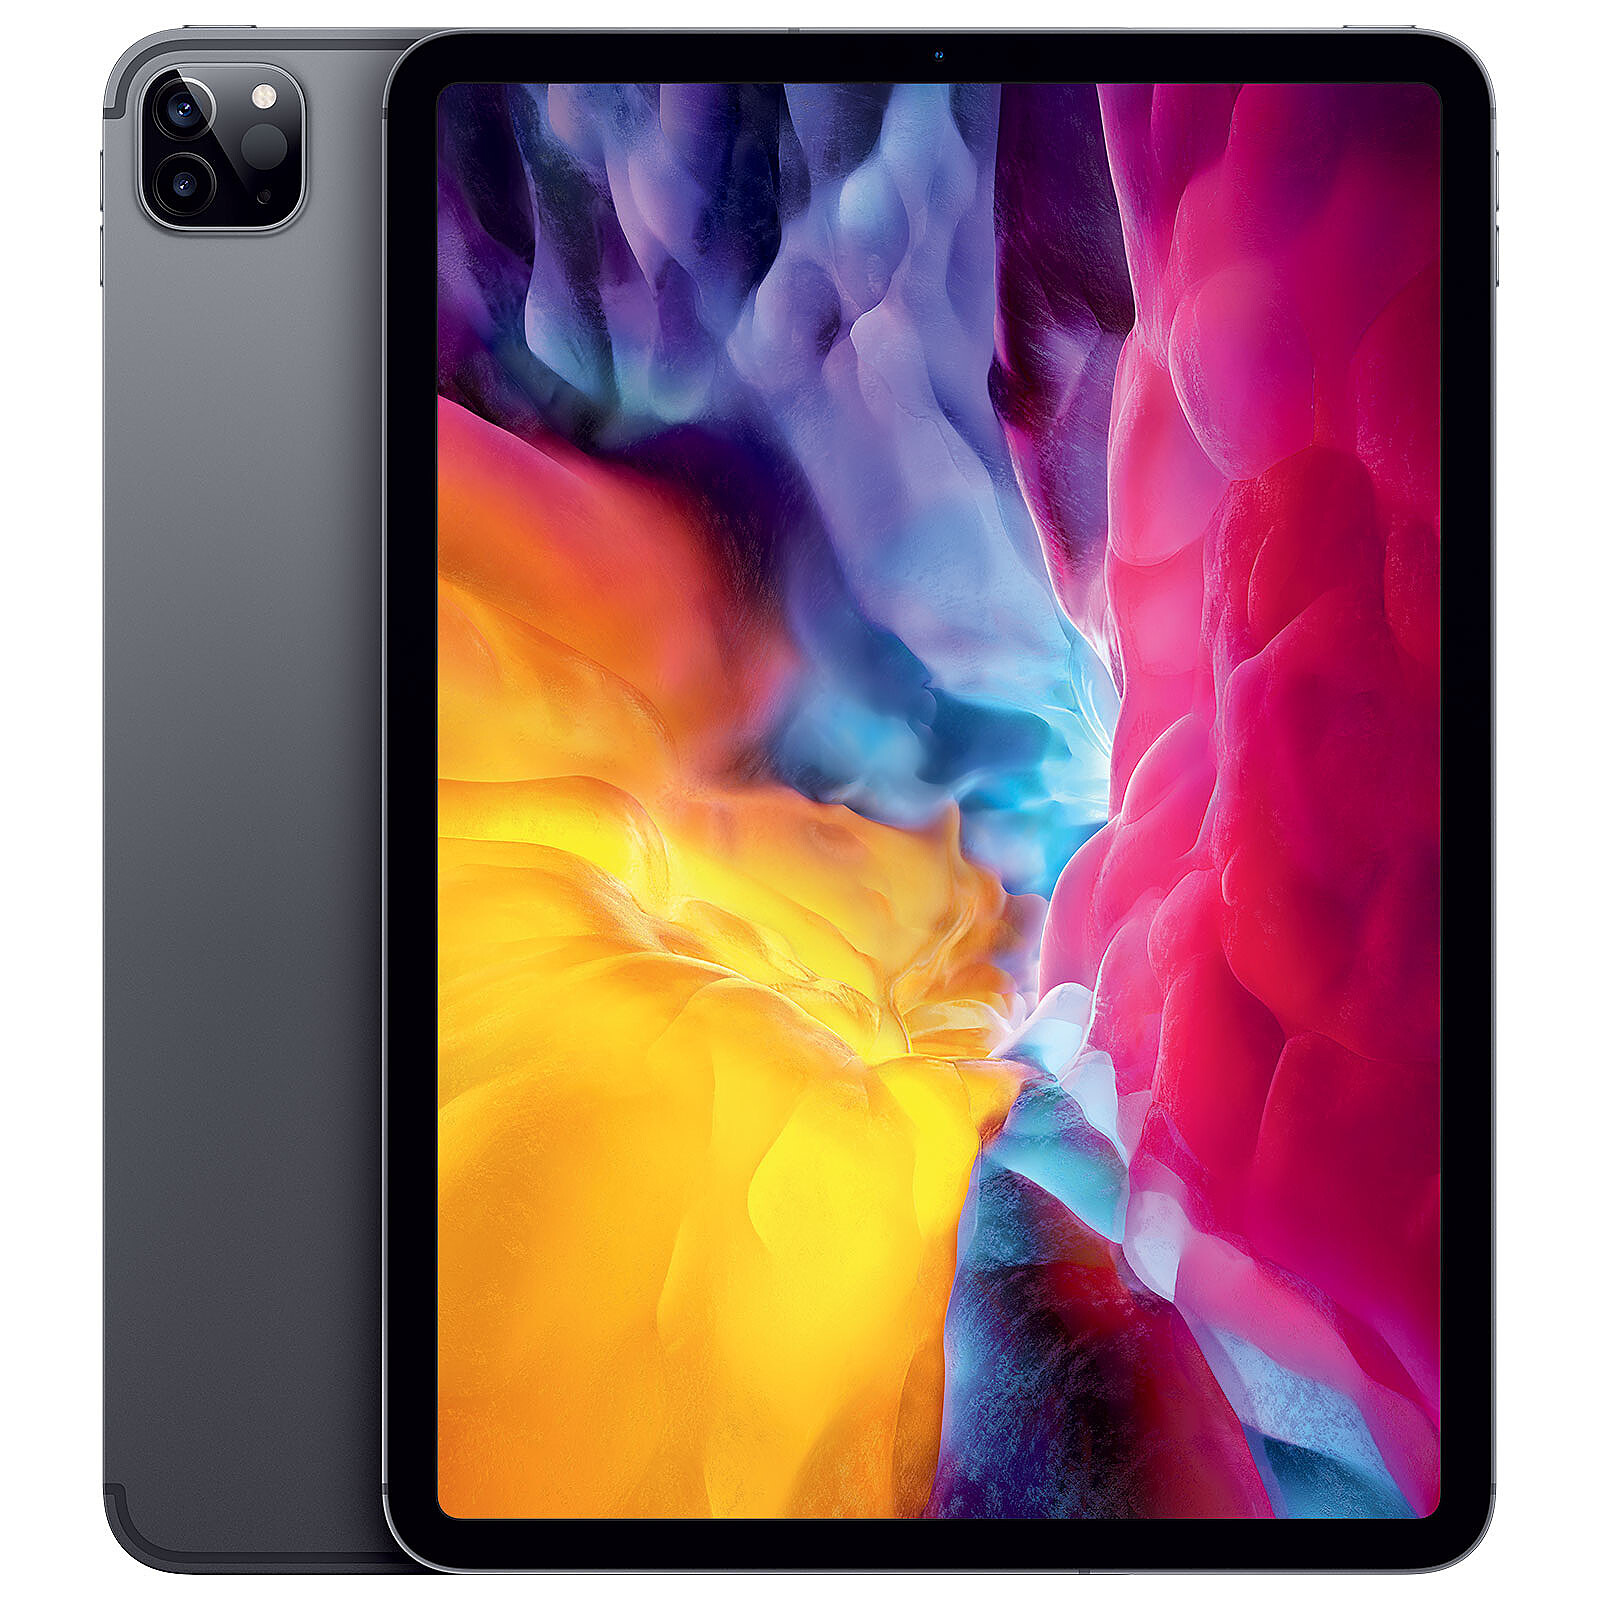 iPad Pro 11 pouces 512 Go Wifi + 4G Argent (2018) - Produit